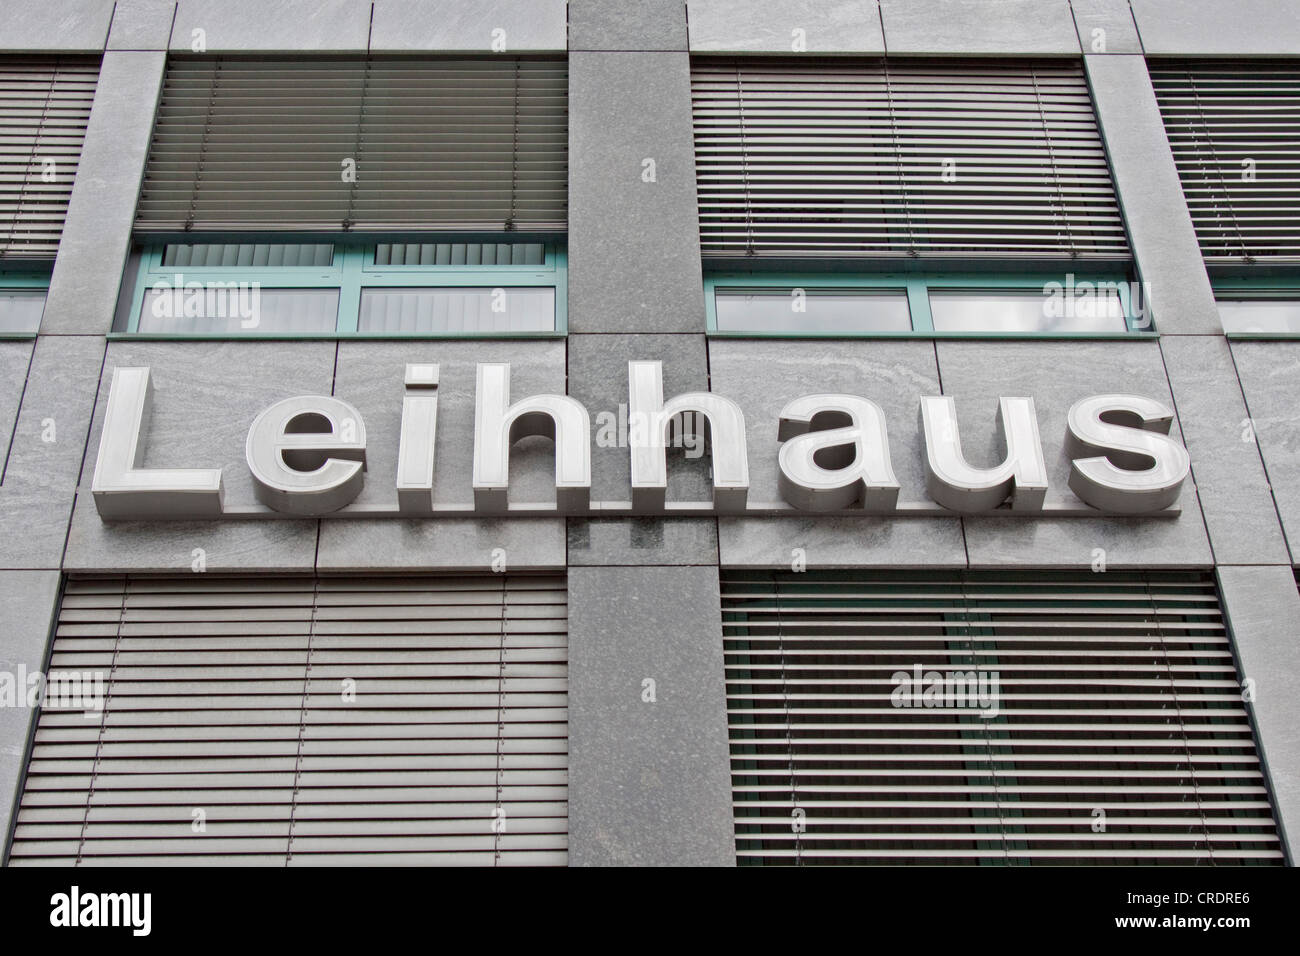 'Lettrage' Leihhaus, Allemand de 'piété', sur une façade Banque D'Images